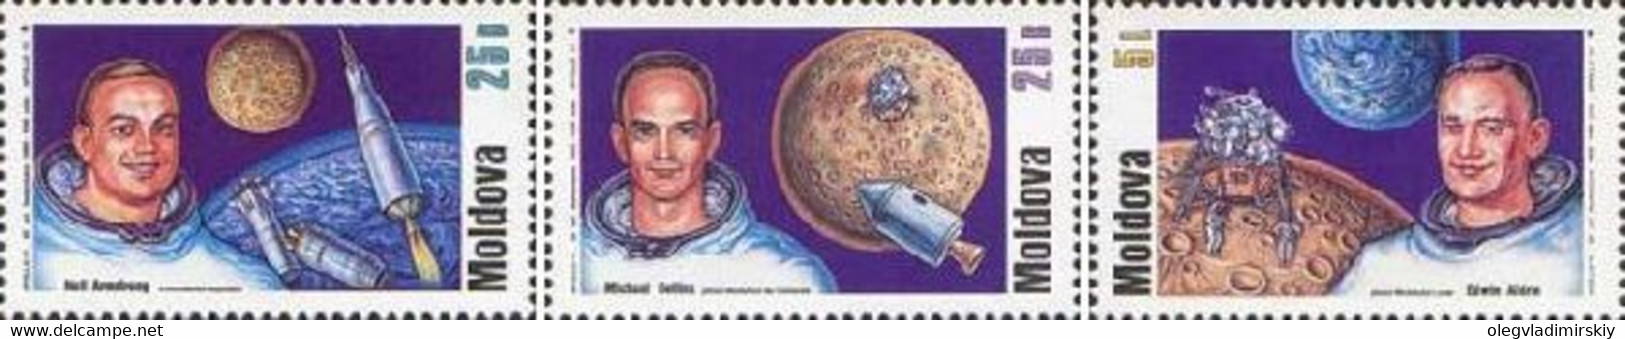 Moldavia Moldova 1999 30th Of The Moon Landing Set Of 3 Stamps - USA